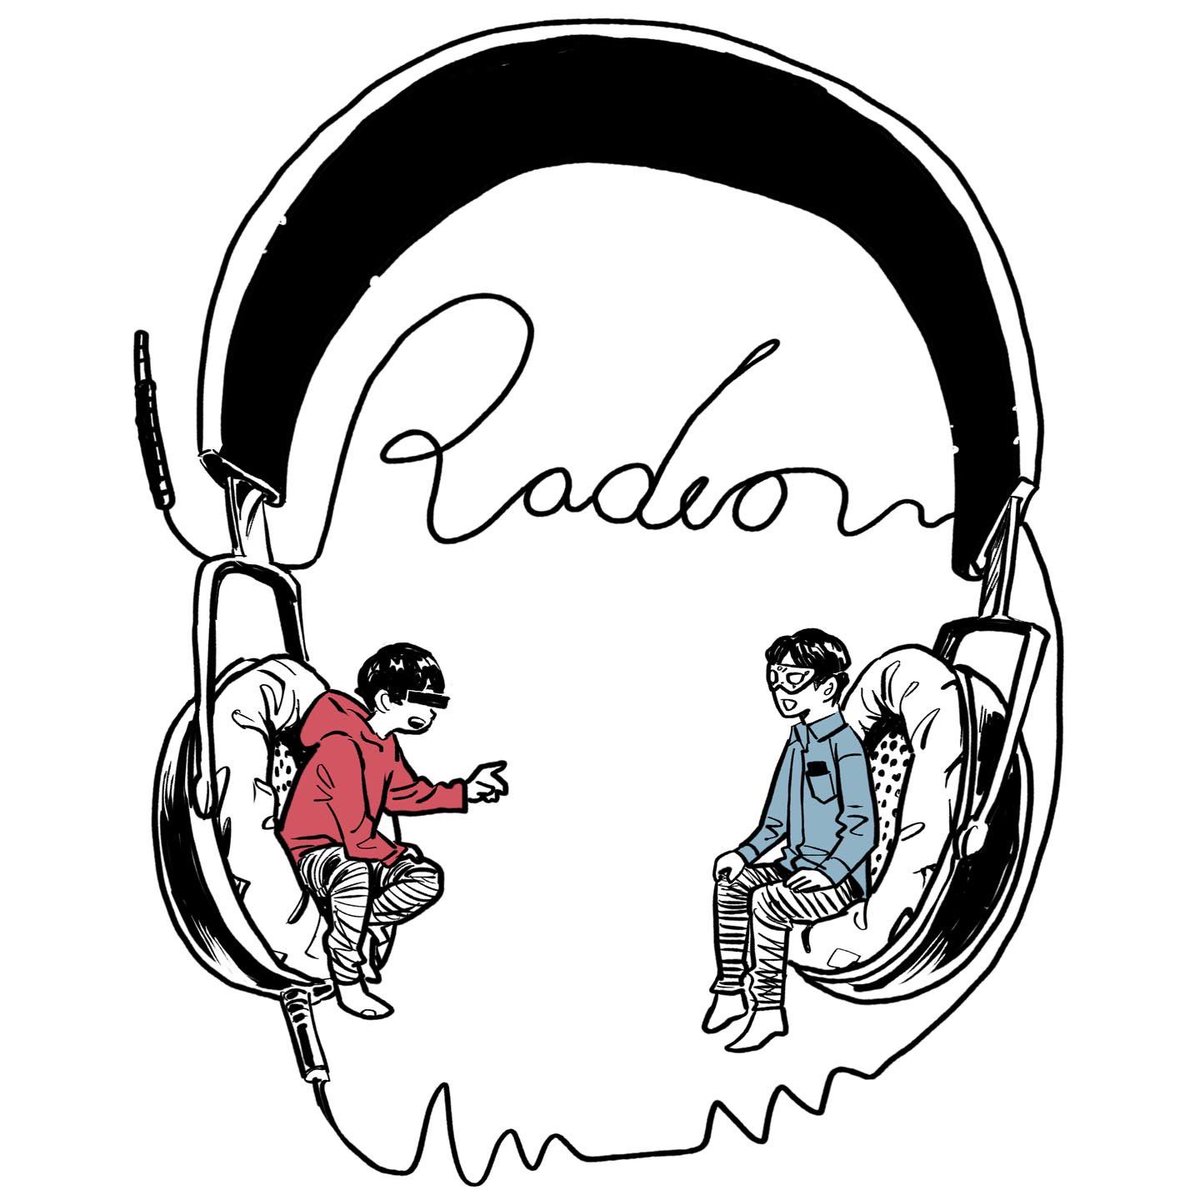 中村光 4 Radio 大好きなネットラジオ 匿名ラジオ のお2人を描きました Inktober Drawing イラスト 匿名ラジオ T Co Pa6dloxf8p Twitter